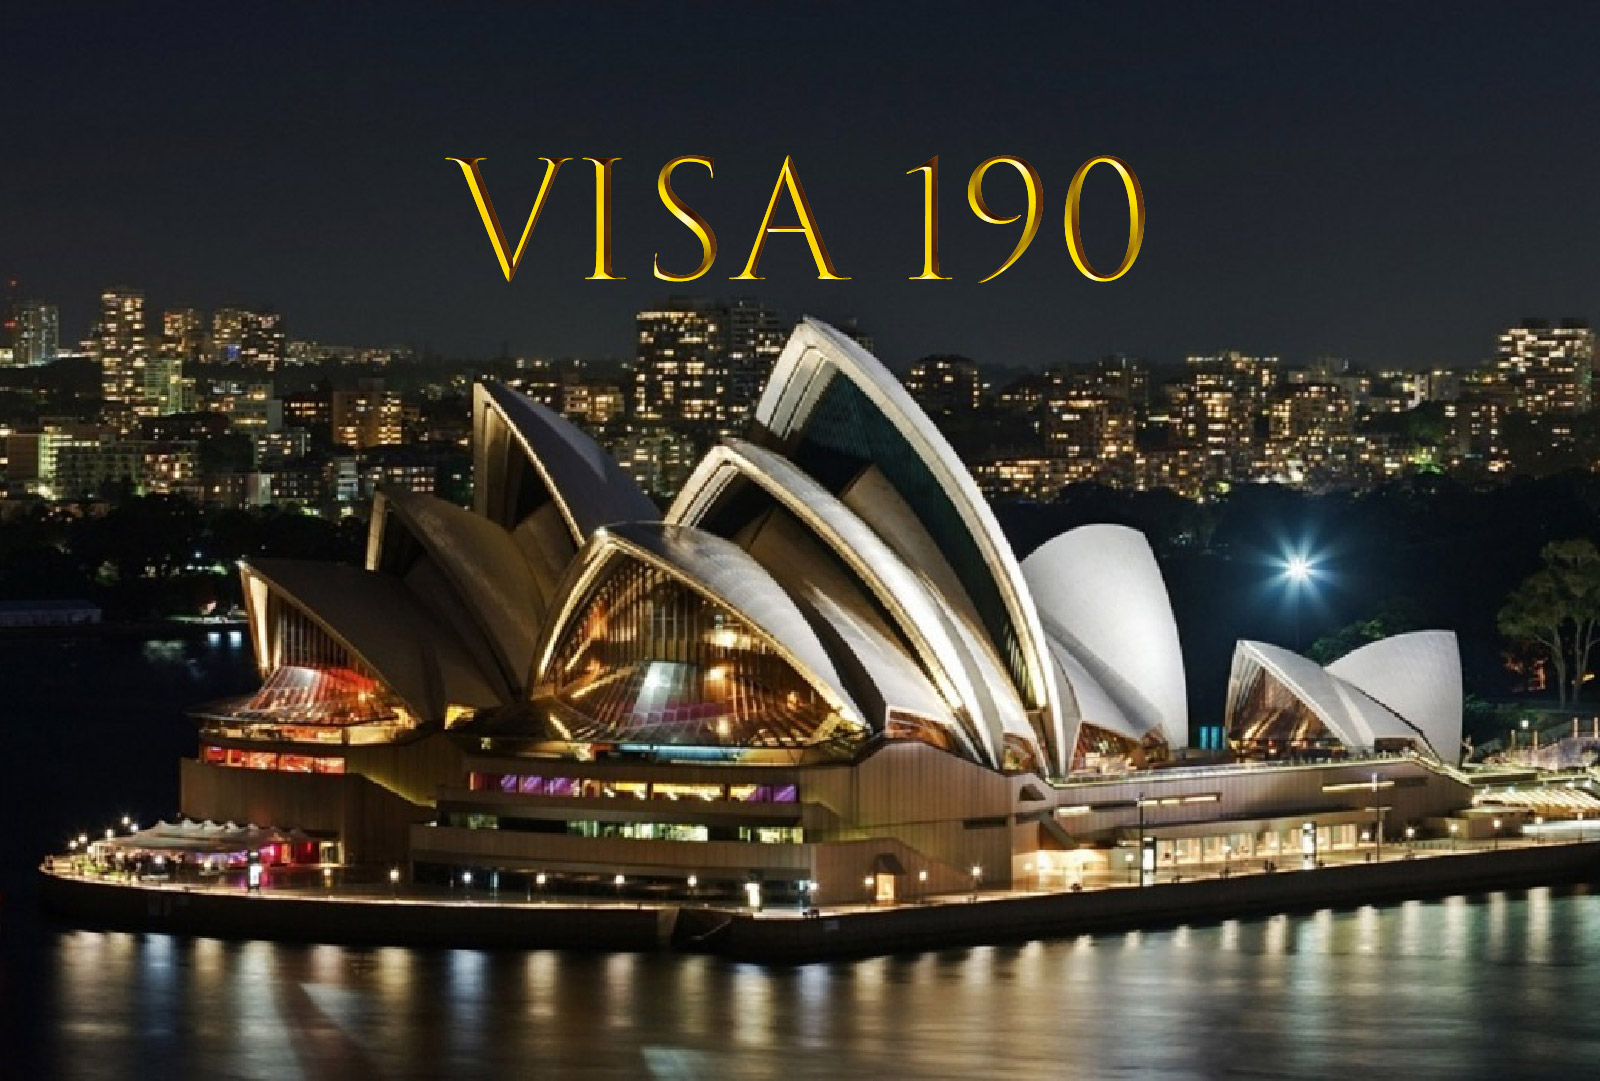 Hành trình gần 5 năm để lấy visa 190 tại Úc